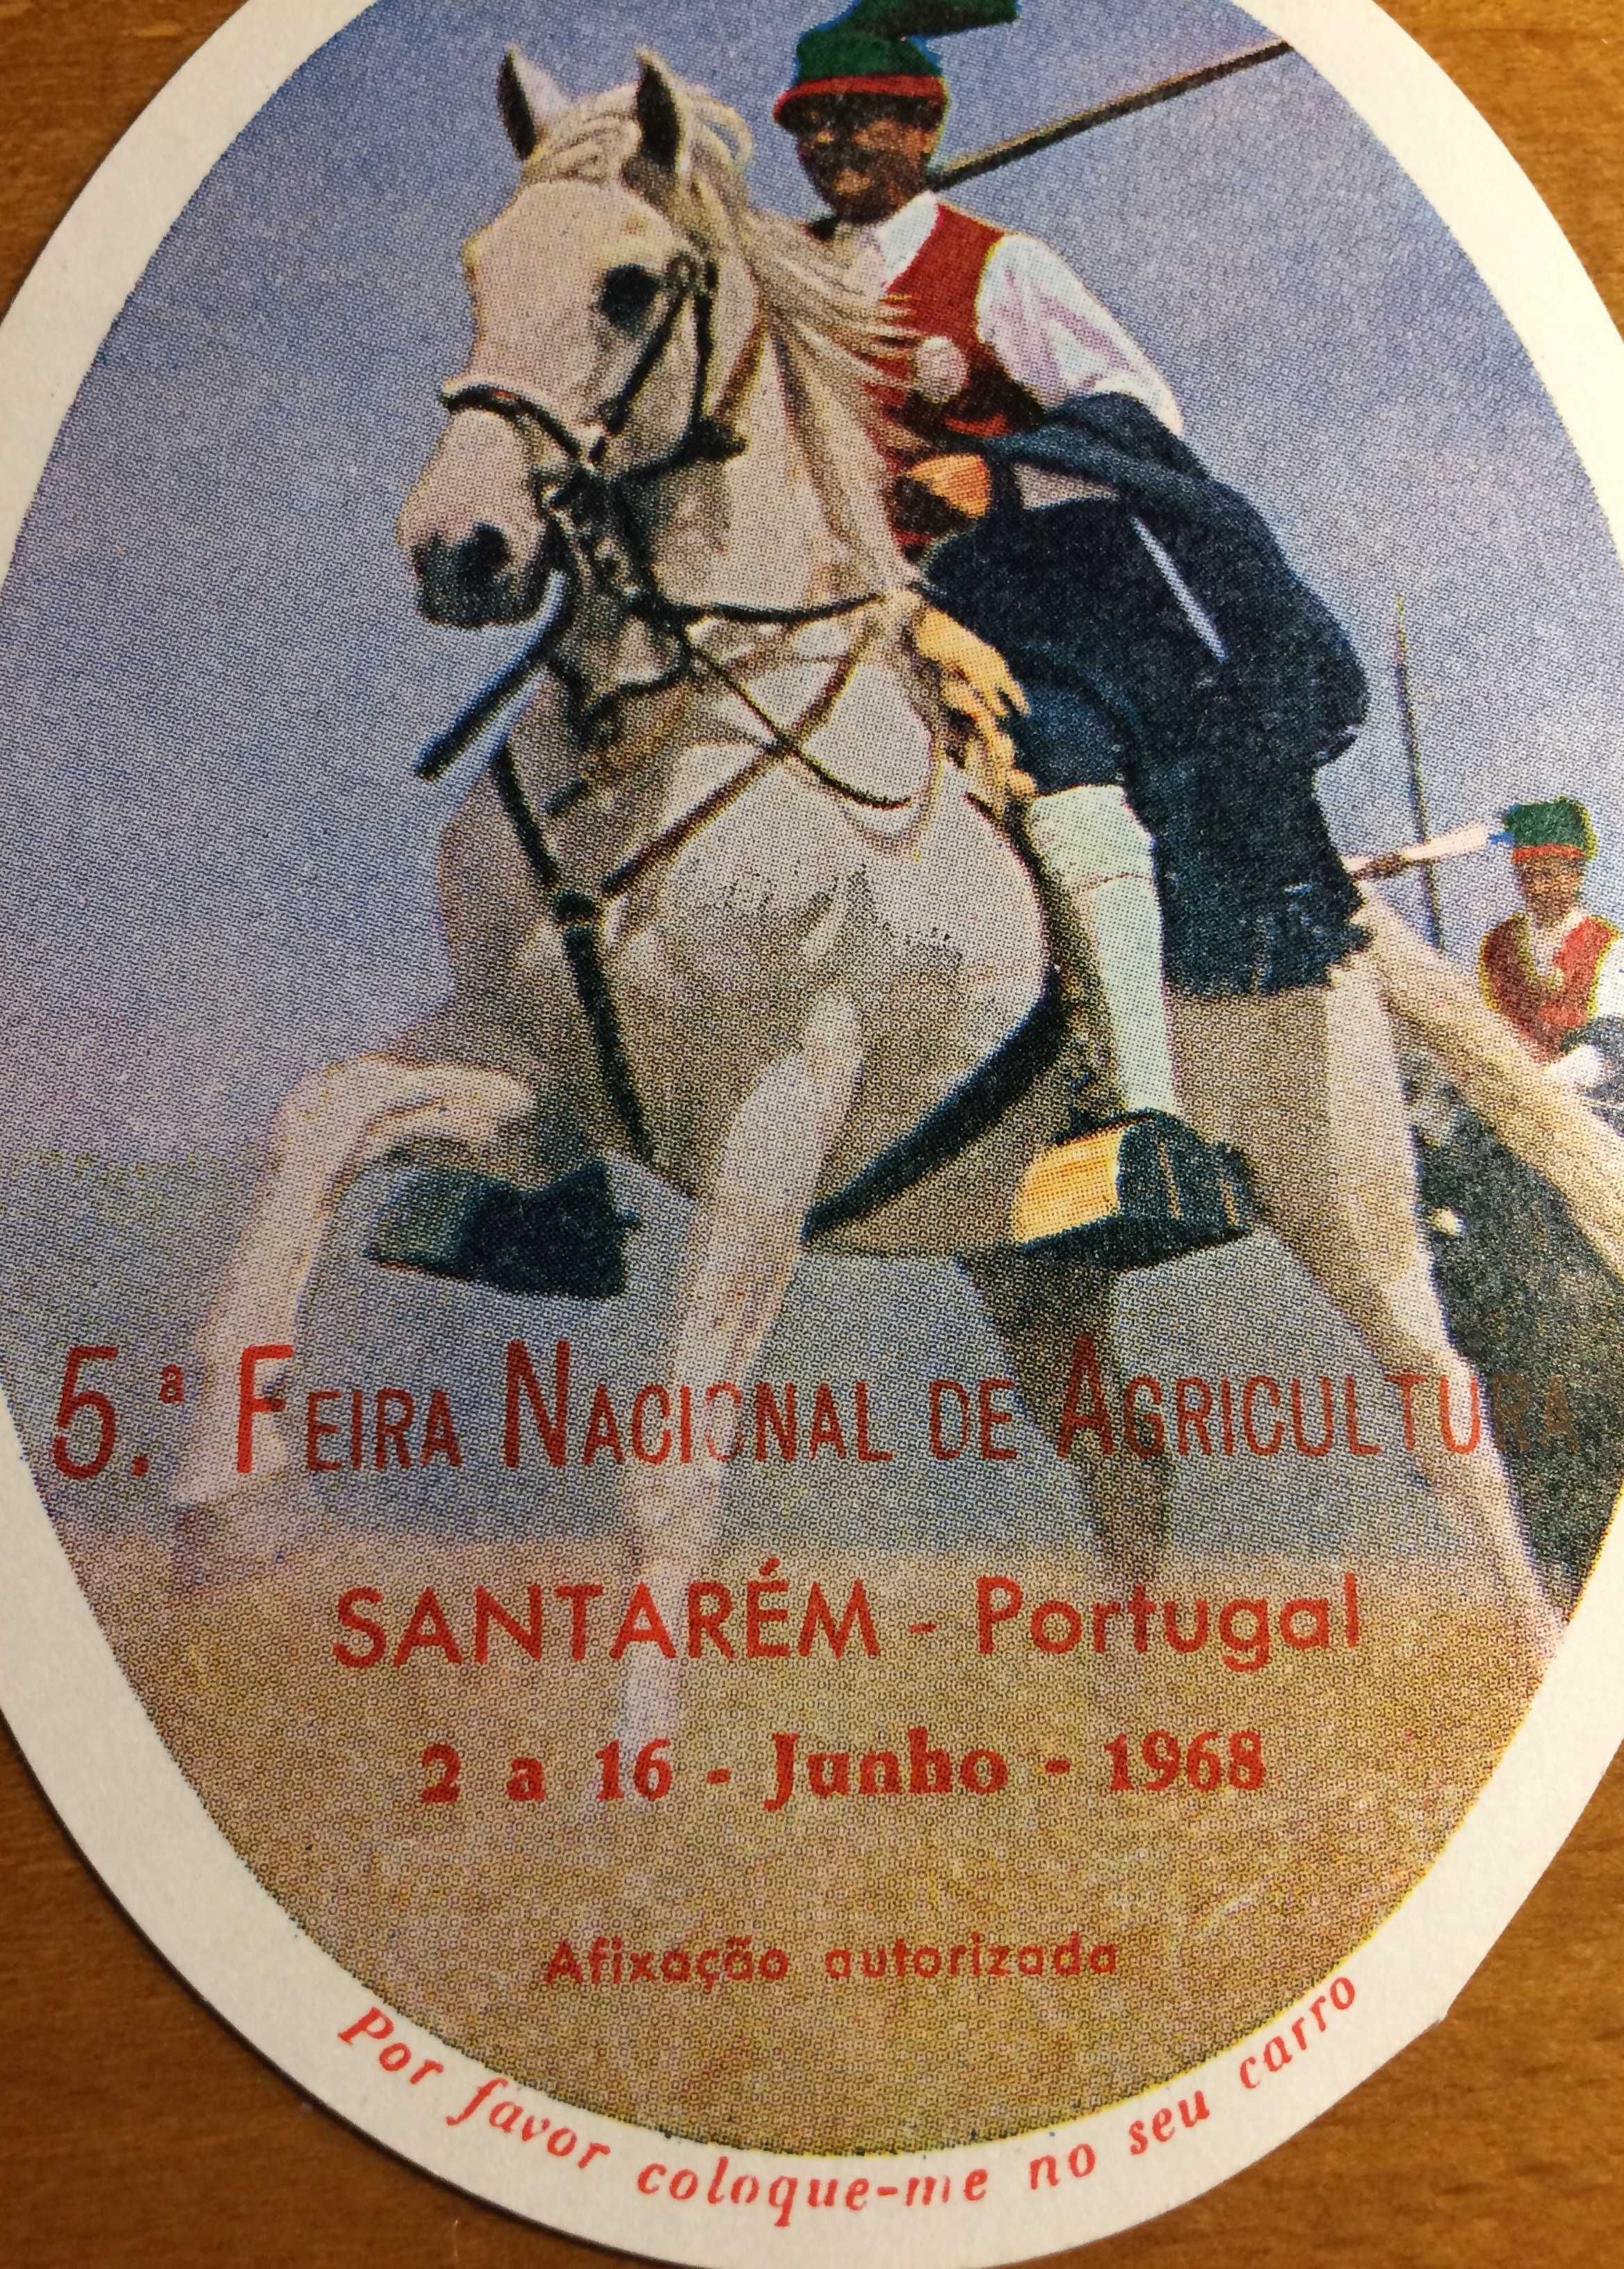 Livre-trânsito da 5ª Feira Nacional de Agricultura - Santarém 1968